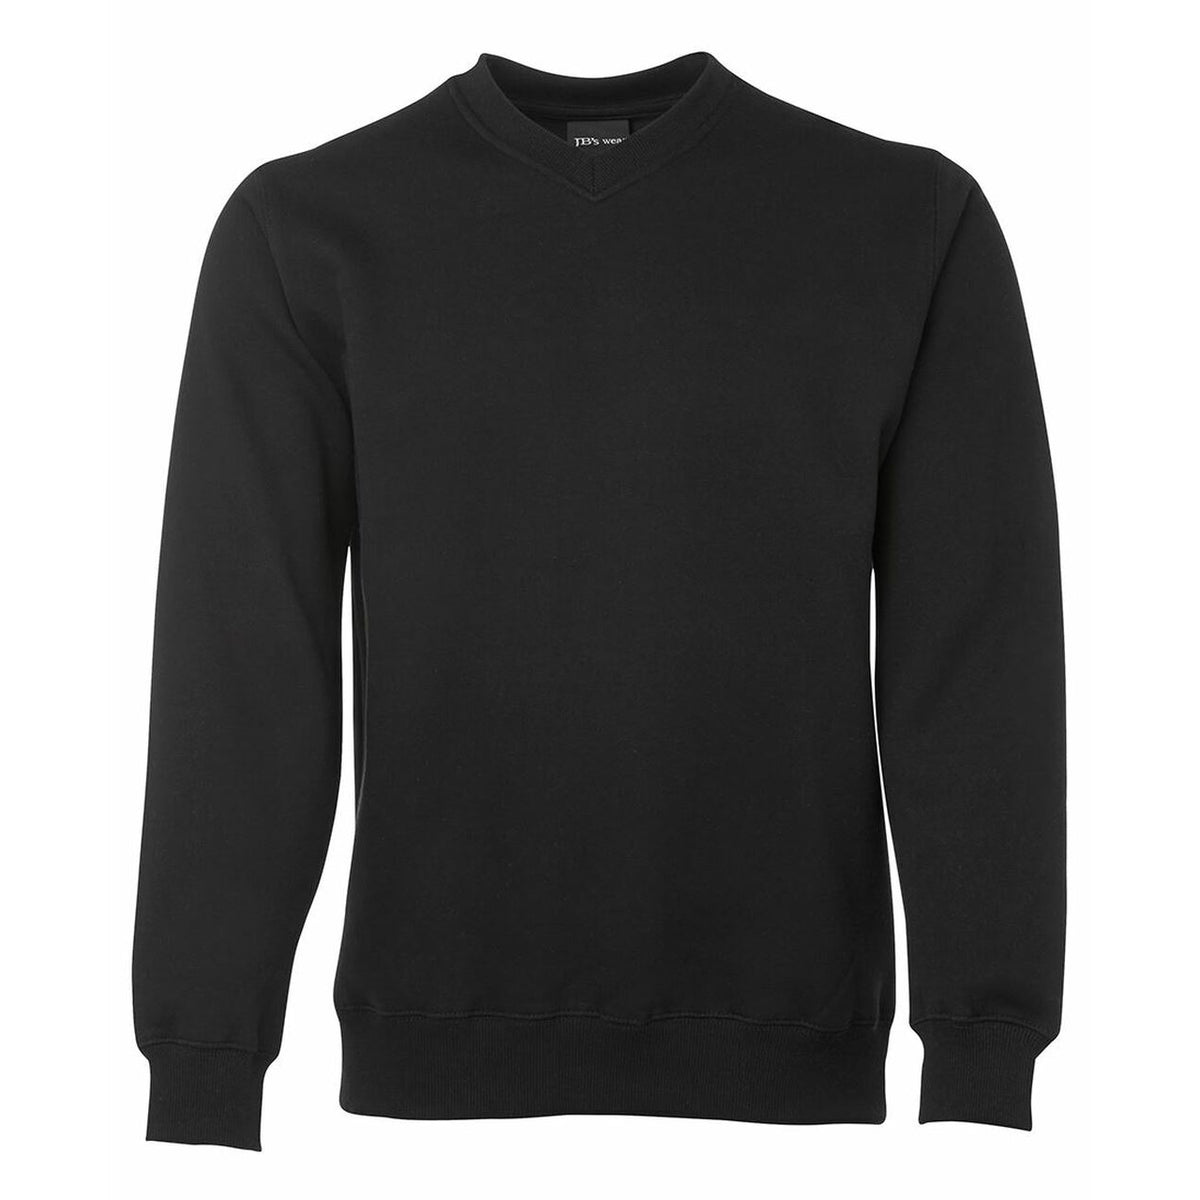 JB's Wear V Neck Fleecy Sweater in Black